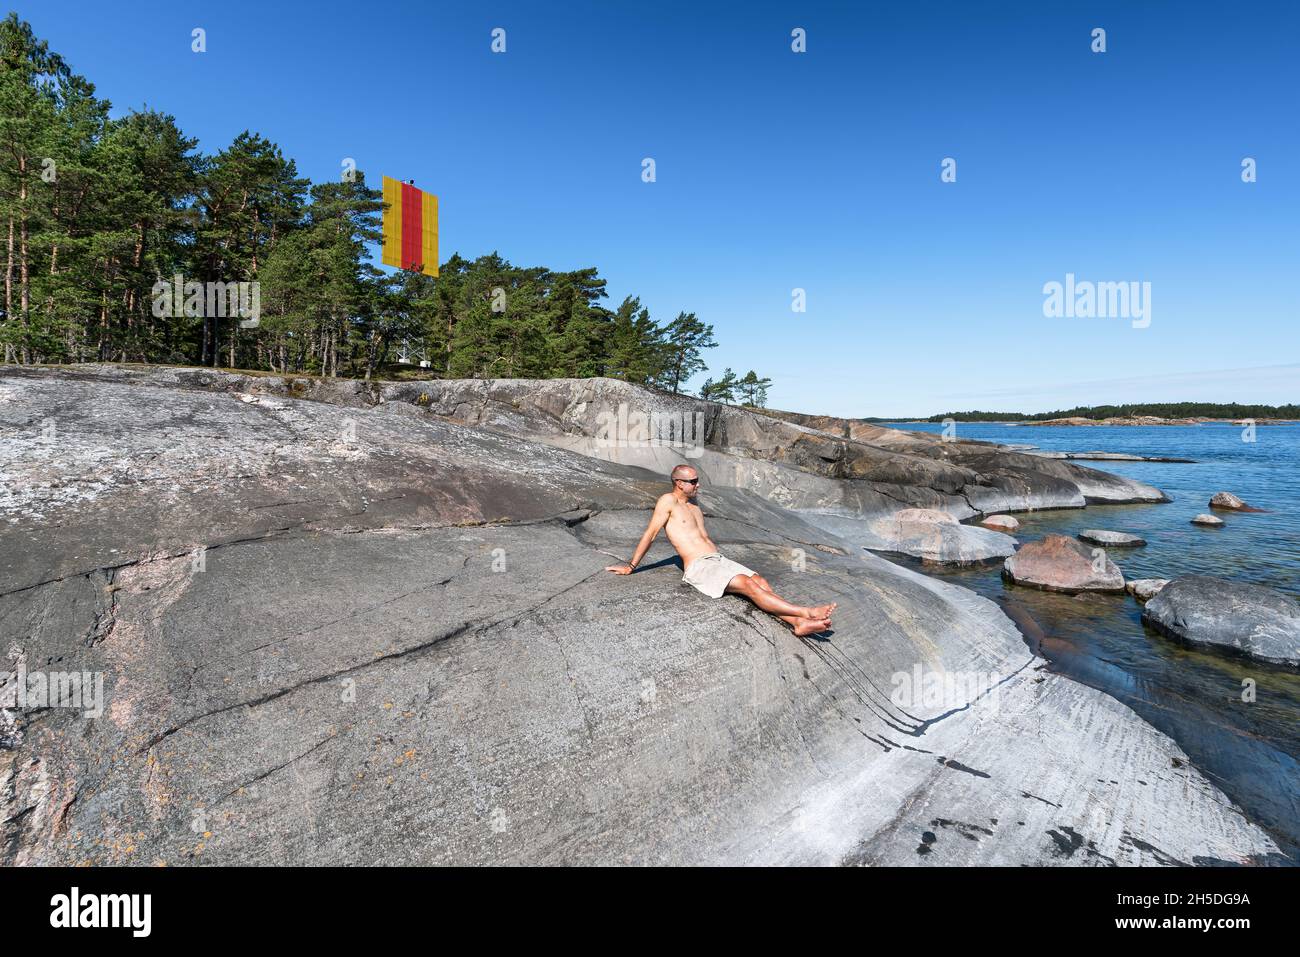 Trocknen nach einem Bad in der Ostsee auf der Insel Rysslobben, Inkoo, Finnland Stockfoto